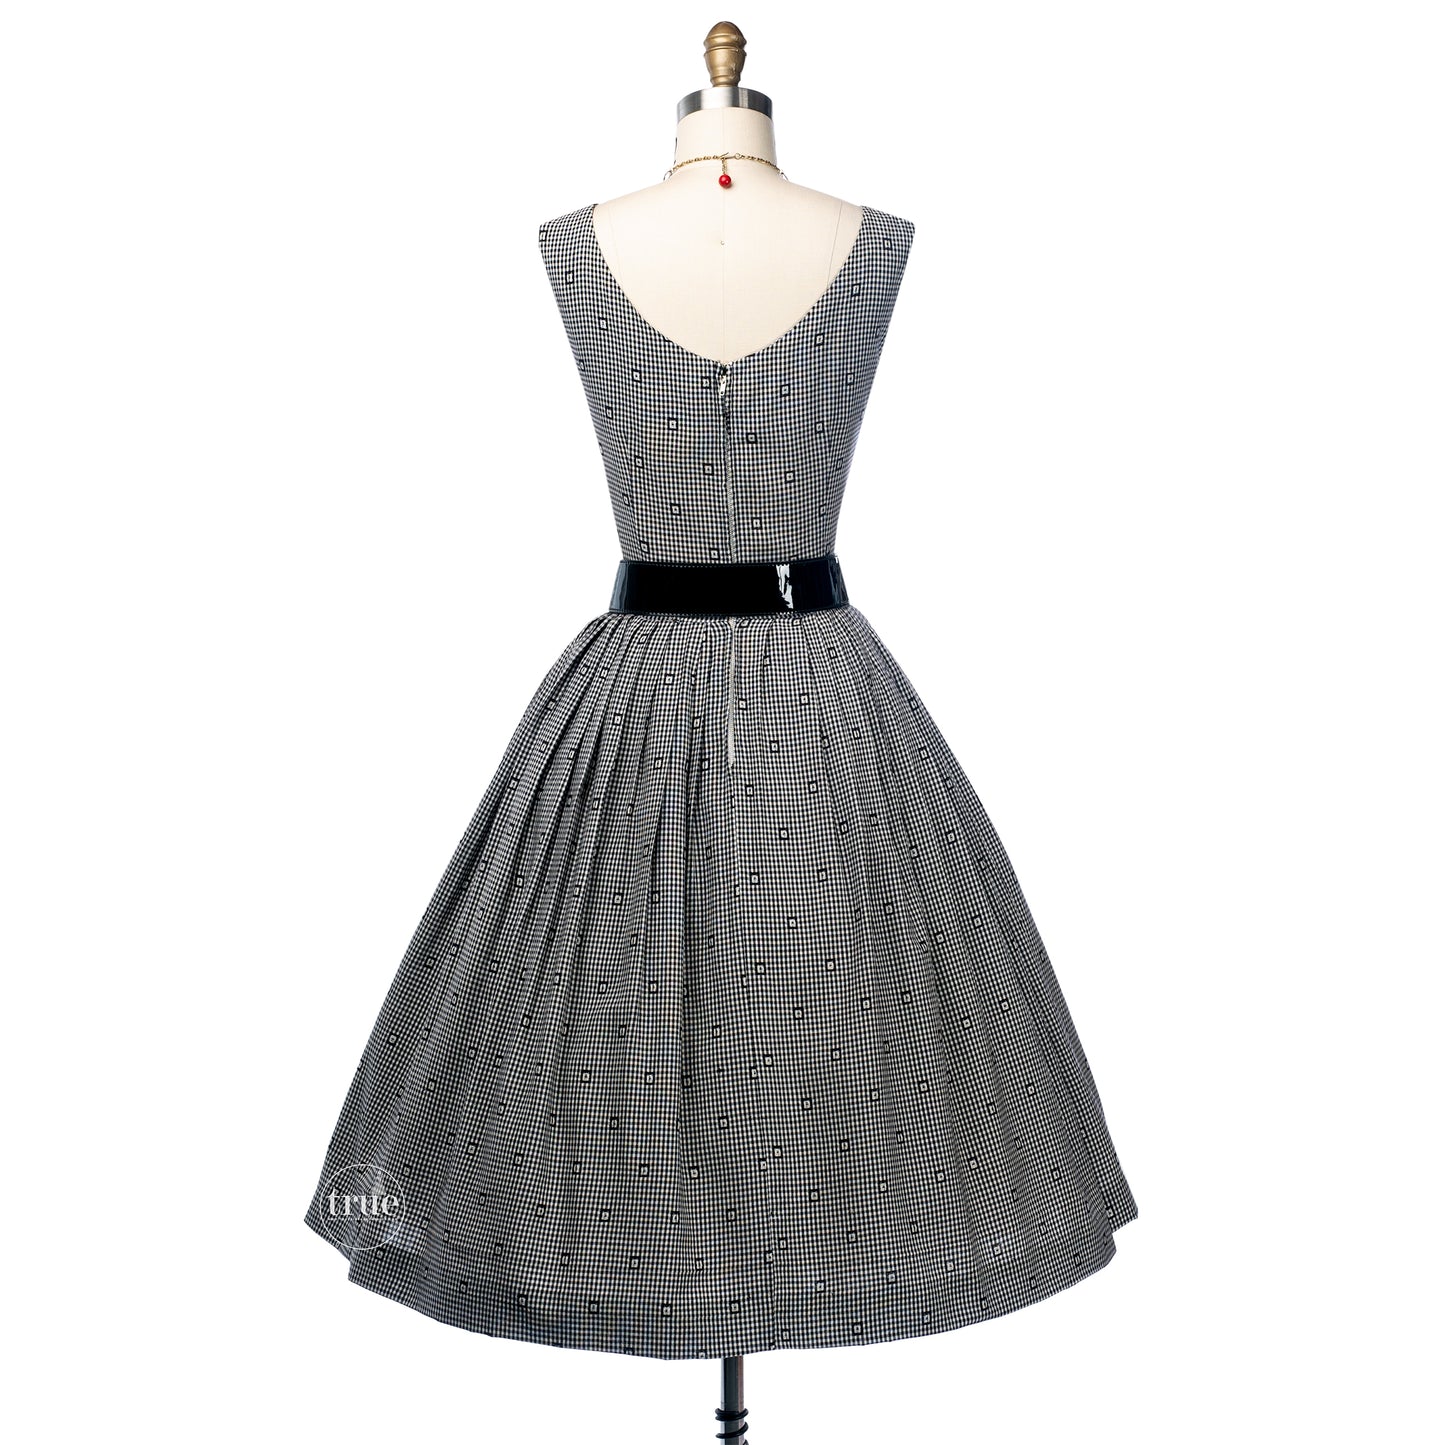 vintage 1950's dress ...classic Black & White Gingham rayon full skirt dress